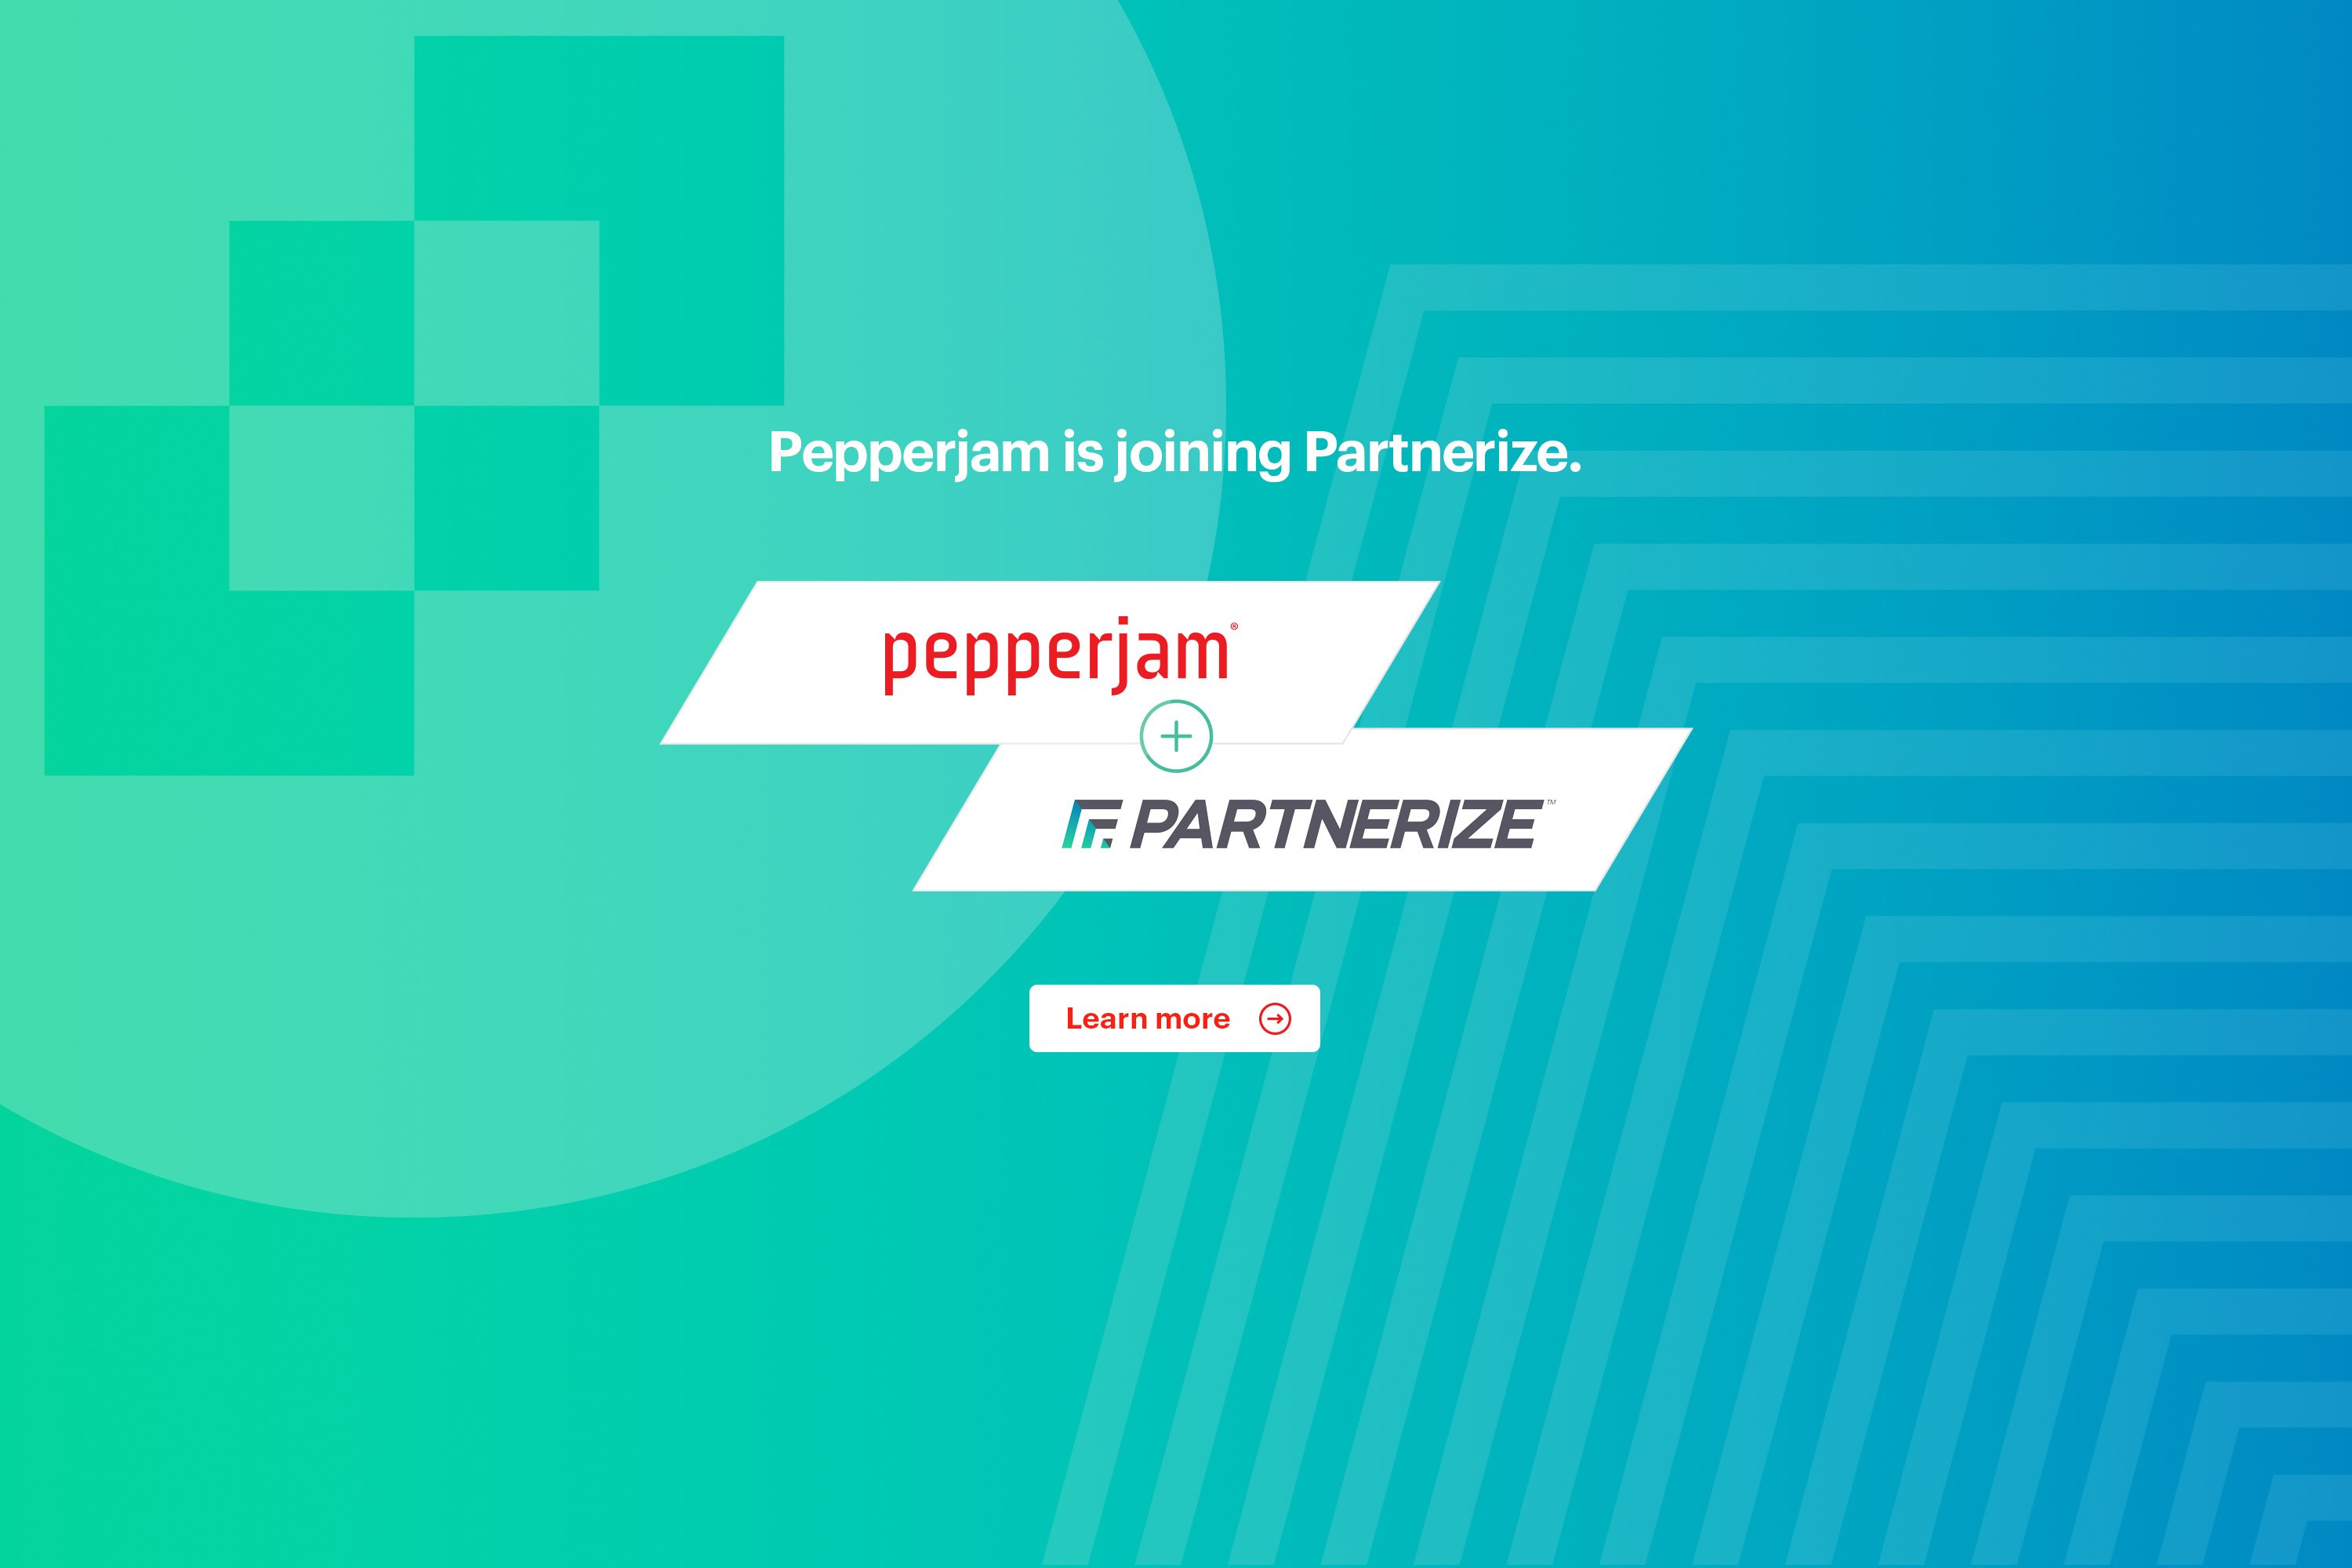 pepperjam_joining_partnerize_carousel